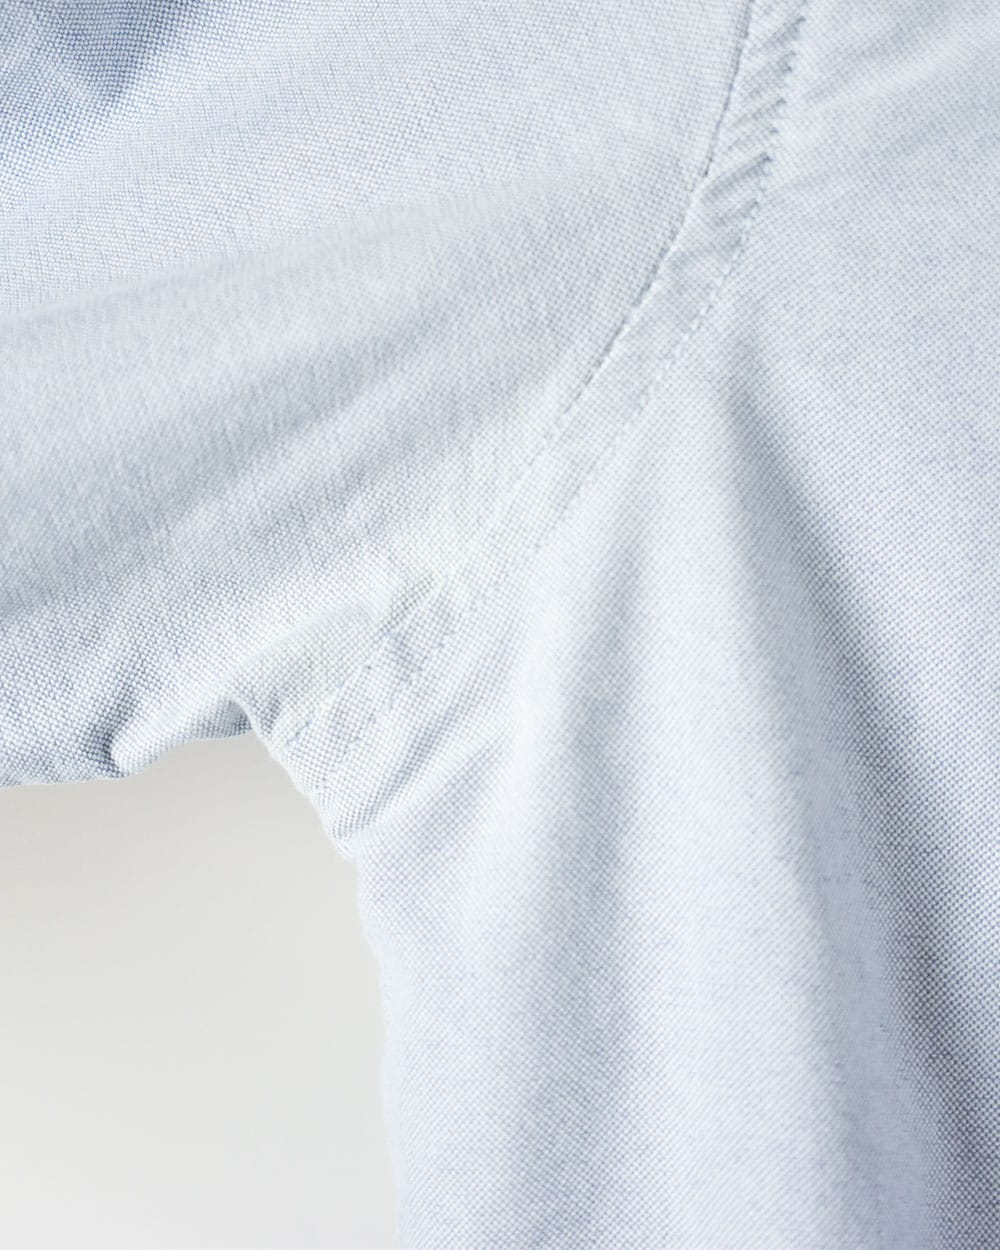 BabyBlue Polo Ralph Lauren Shirt - Small